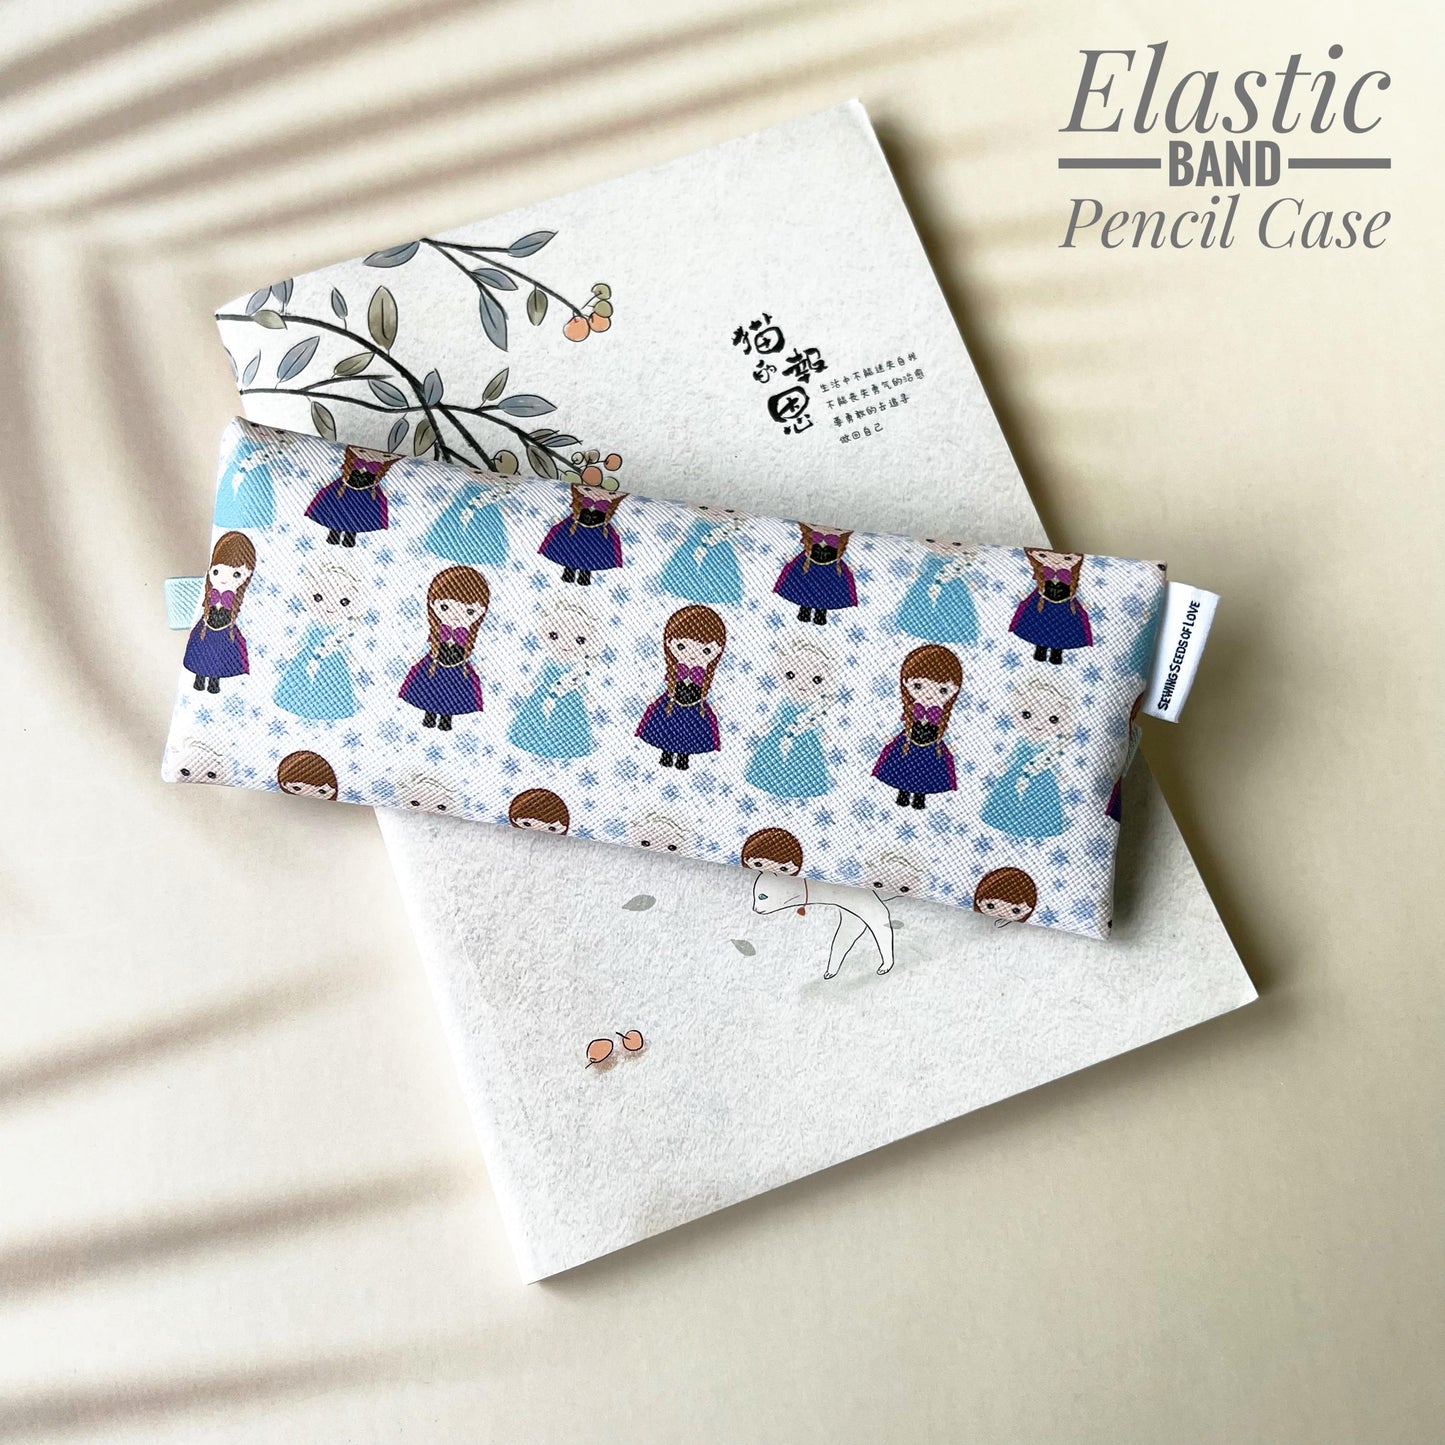 Elastic Band Pencil Case - EBPC26